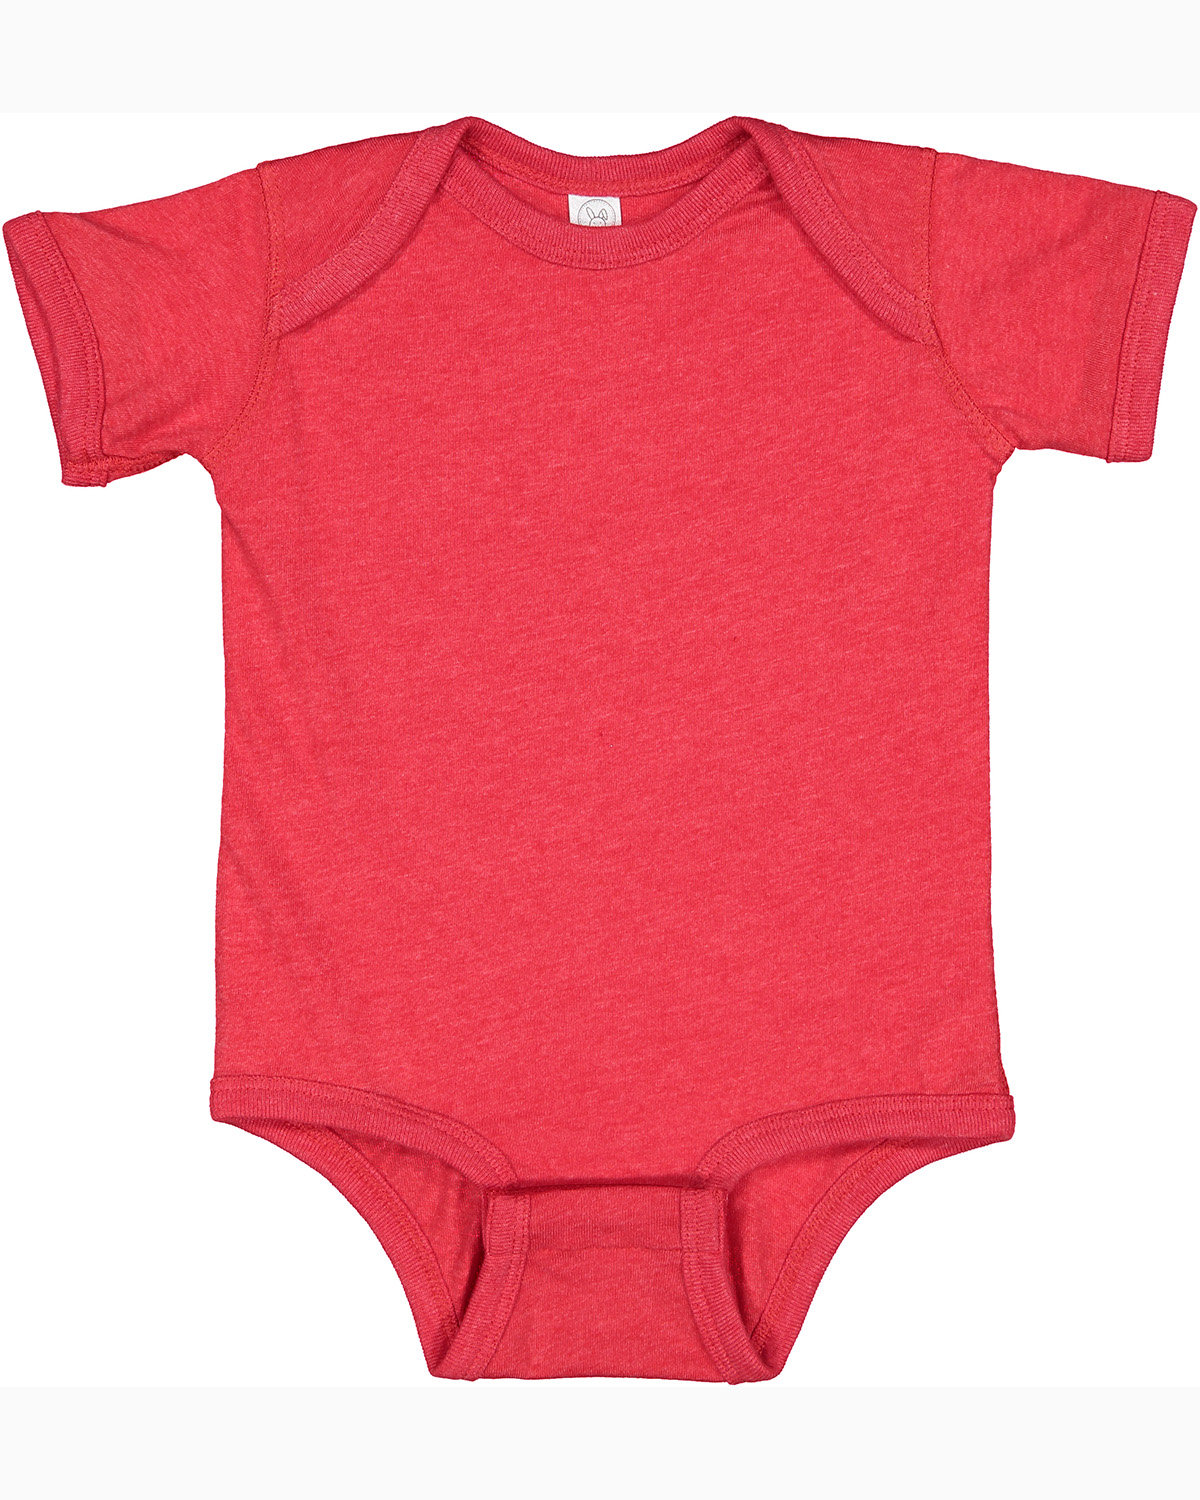 Rabbit Skins Infant Fine Jersey Bodysuit VINTAGE RED 